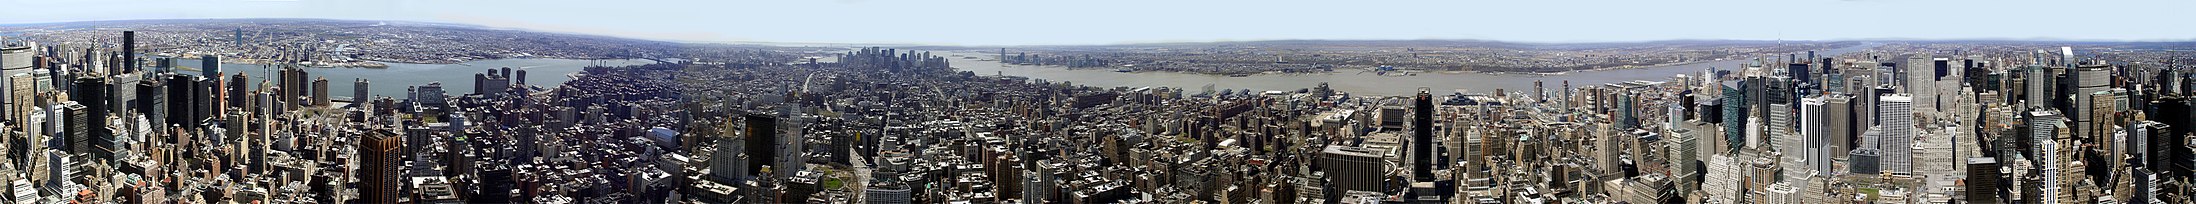 Panorama em 360° da cidade de Nova Iorque, vista do observatório do Empire State Building.